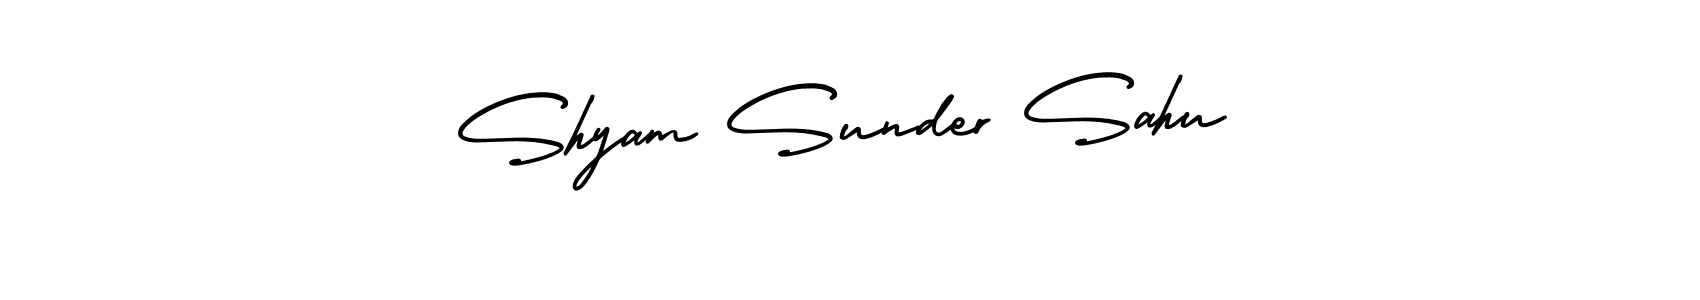 83+ Shyam Sunder Sahu Name Signature Style Ideas | Wonderful Electronic ...